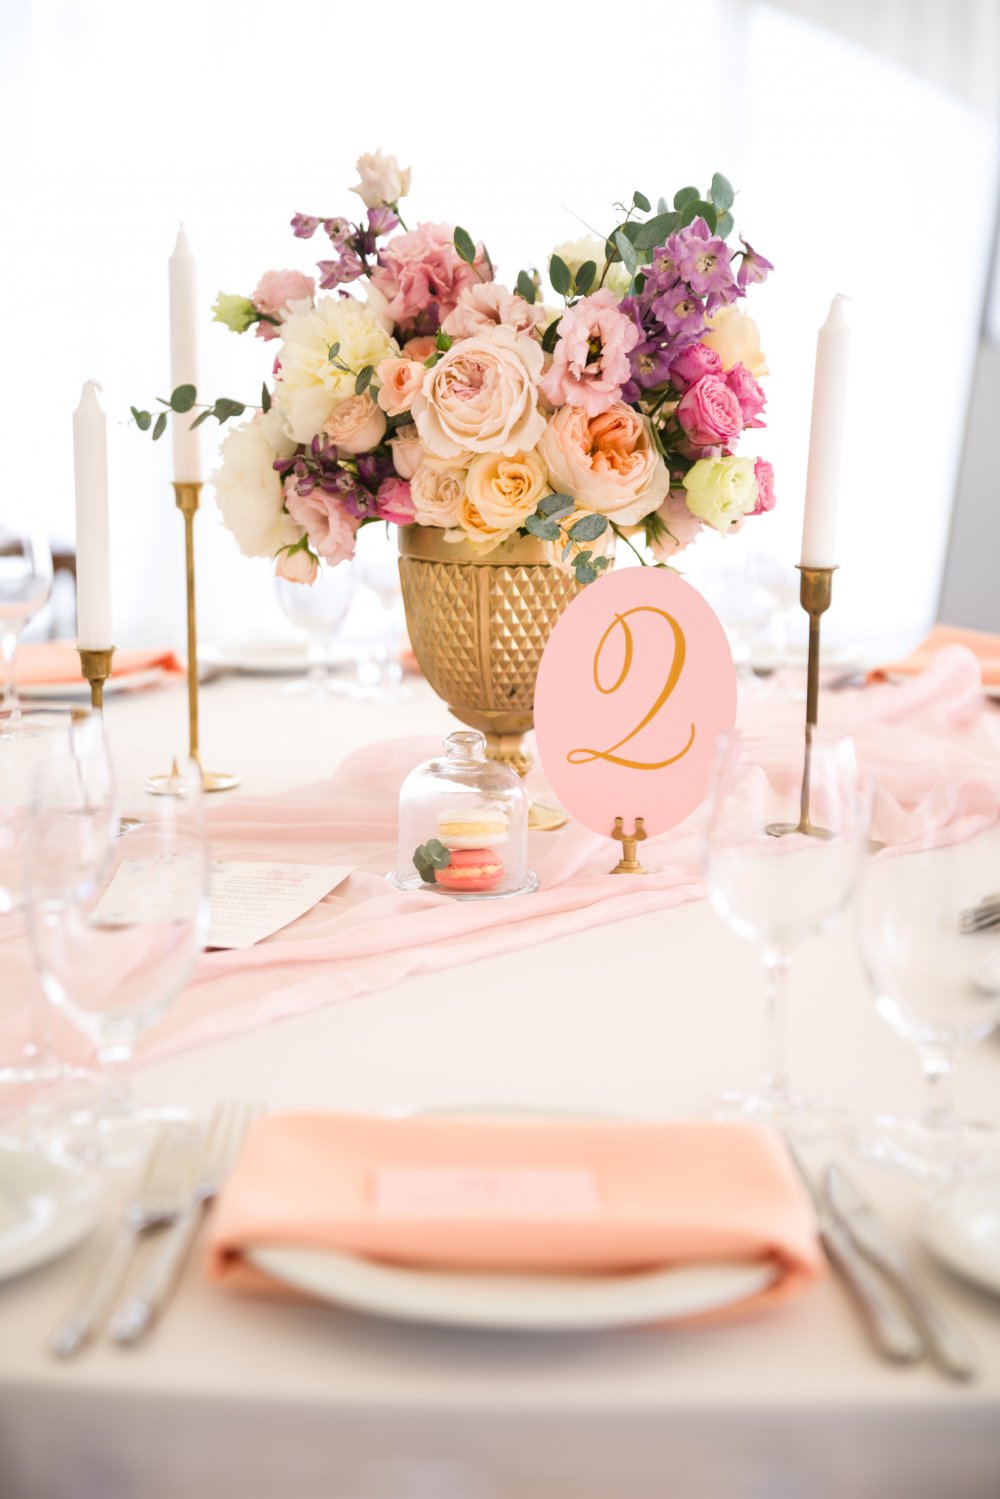 Пастельные оттенки во флористике дополняются ноткой золота в декоре. Оформление стола также включало шелковую дорожкой пудрово-розового оттенка, персиковыми салфетками и пирожными макаронс в небольших стеклянных колпаках.